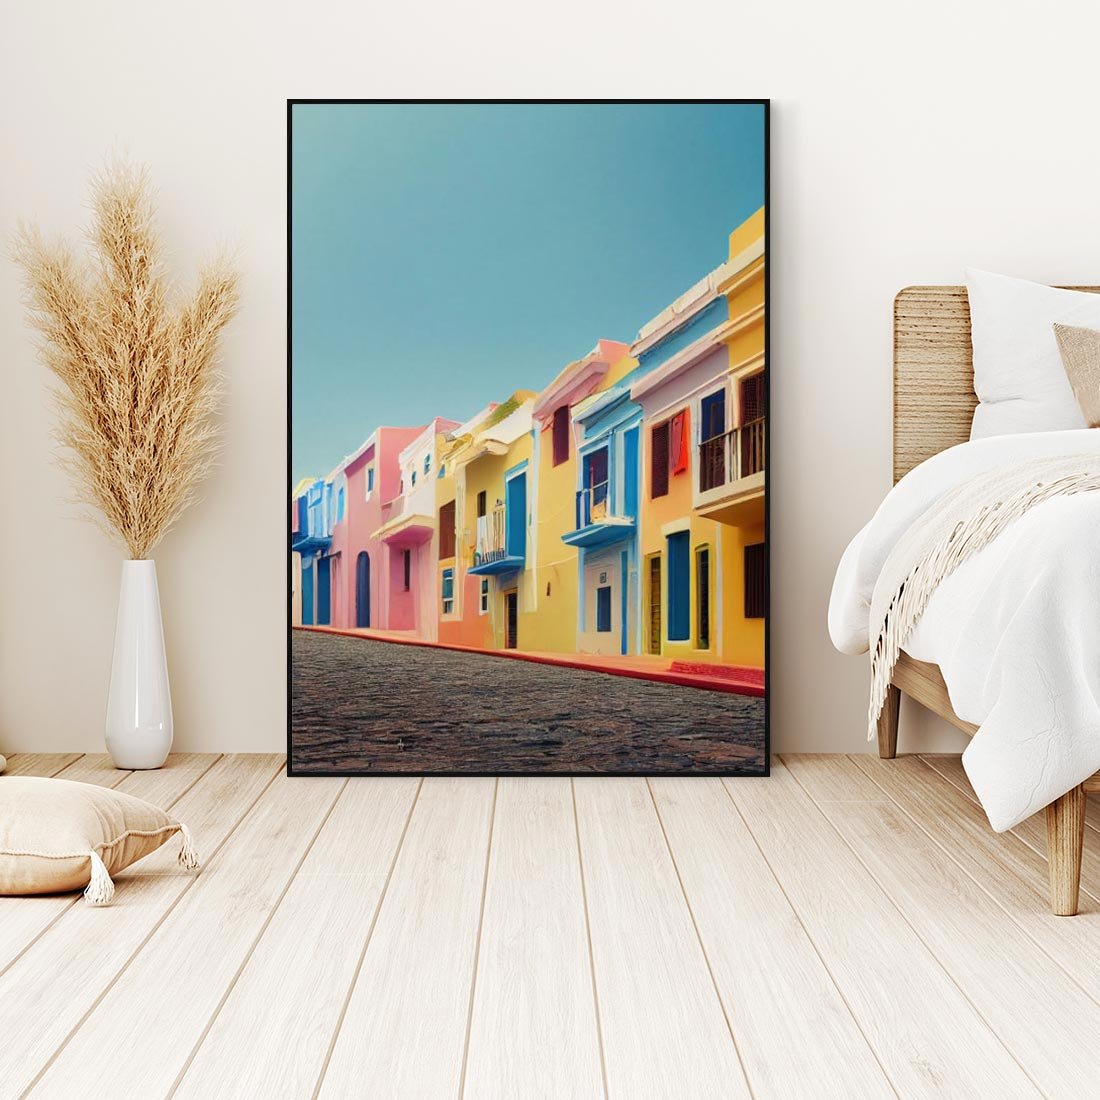 Obraz w ramie 50x70 - Ekspresja marzeń i tęsknot - pastelowe kolorowe budynki, wzdłuż ulicy - rama czarna